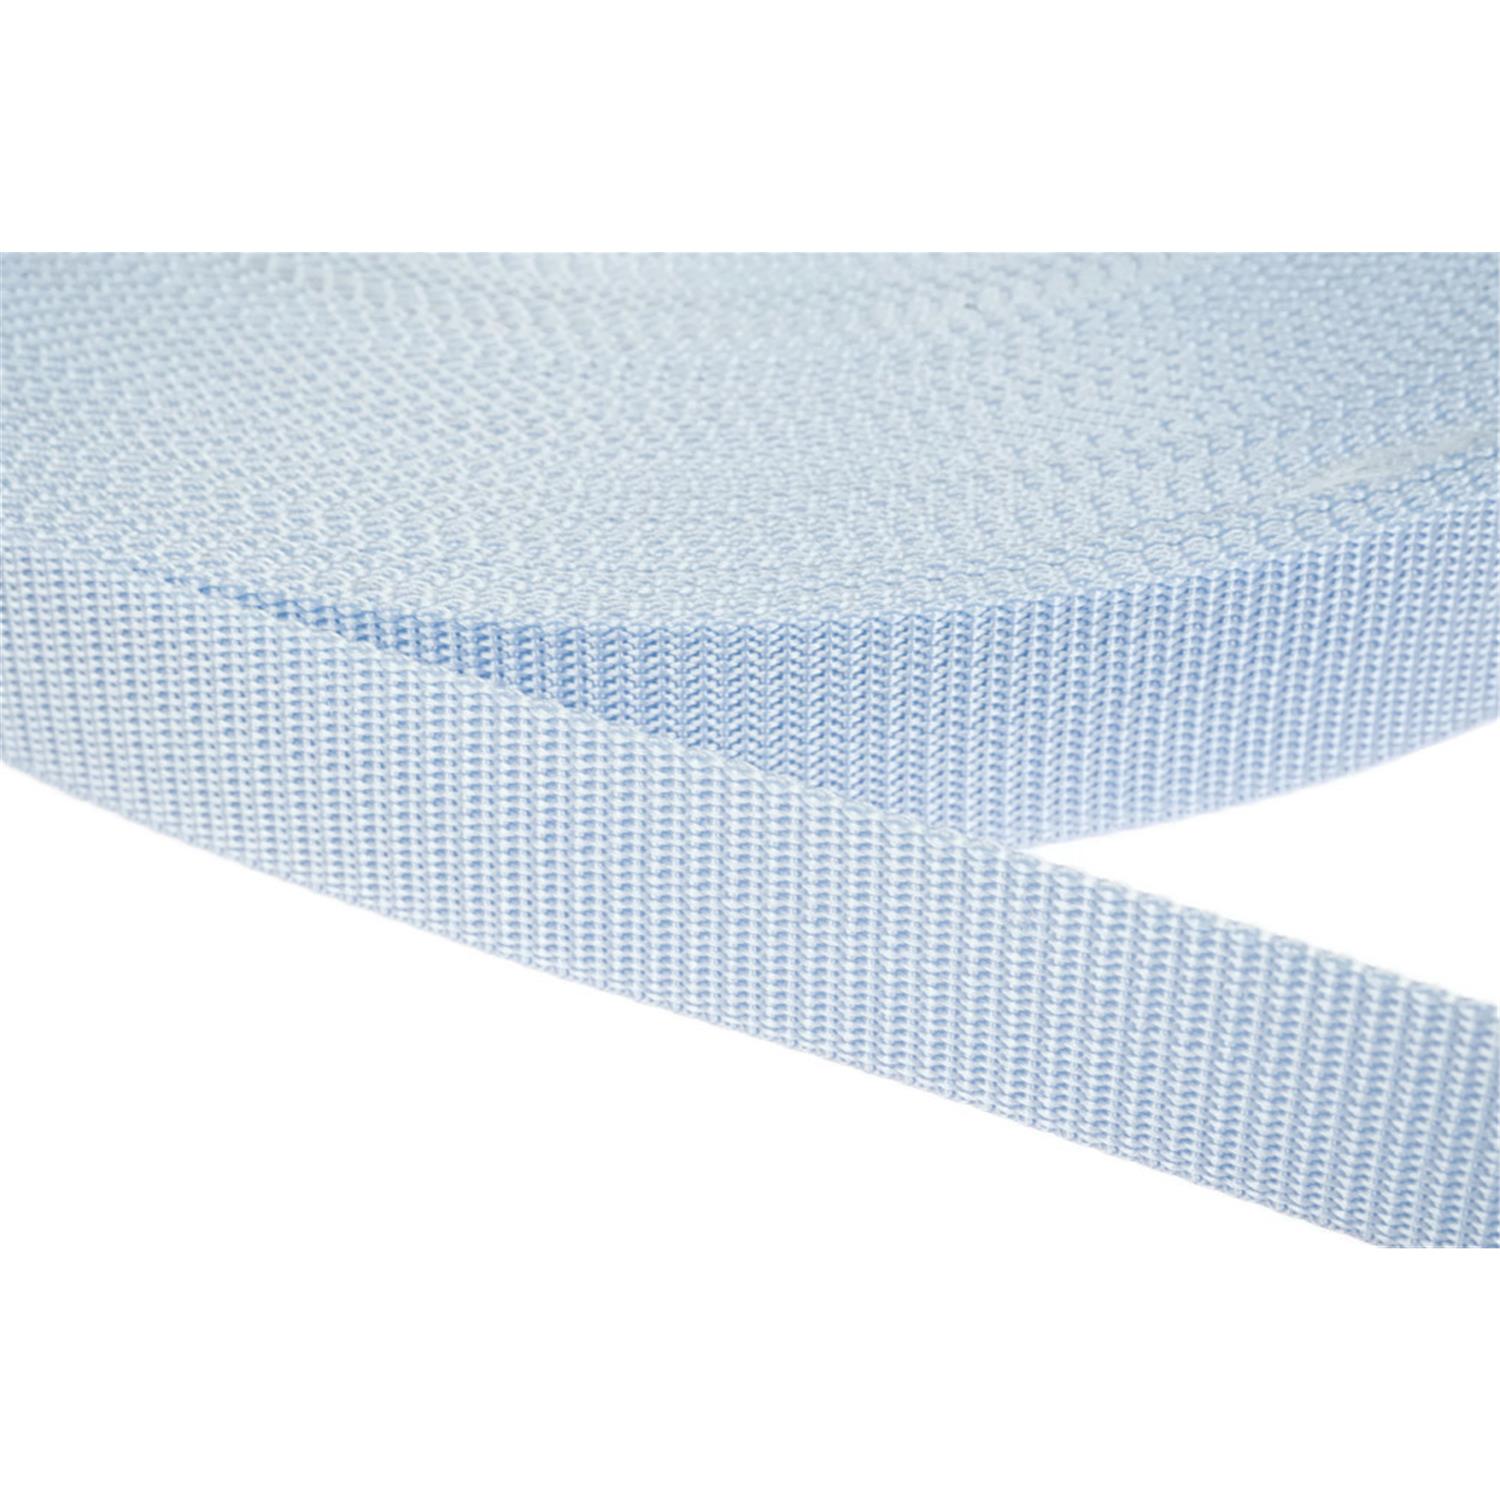 Gurtband 25mm breit aus Polypropylen in 41 Farben 25 - hellblau 50 Meter